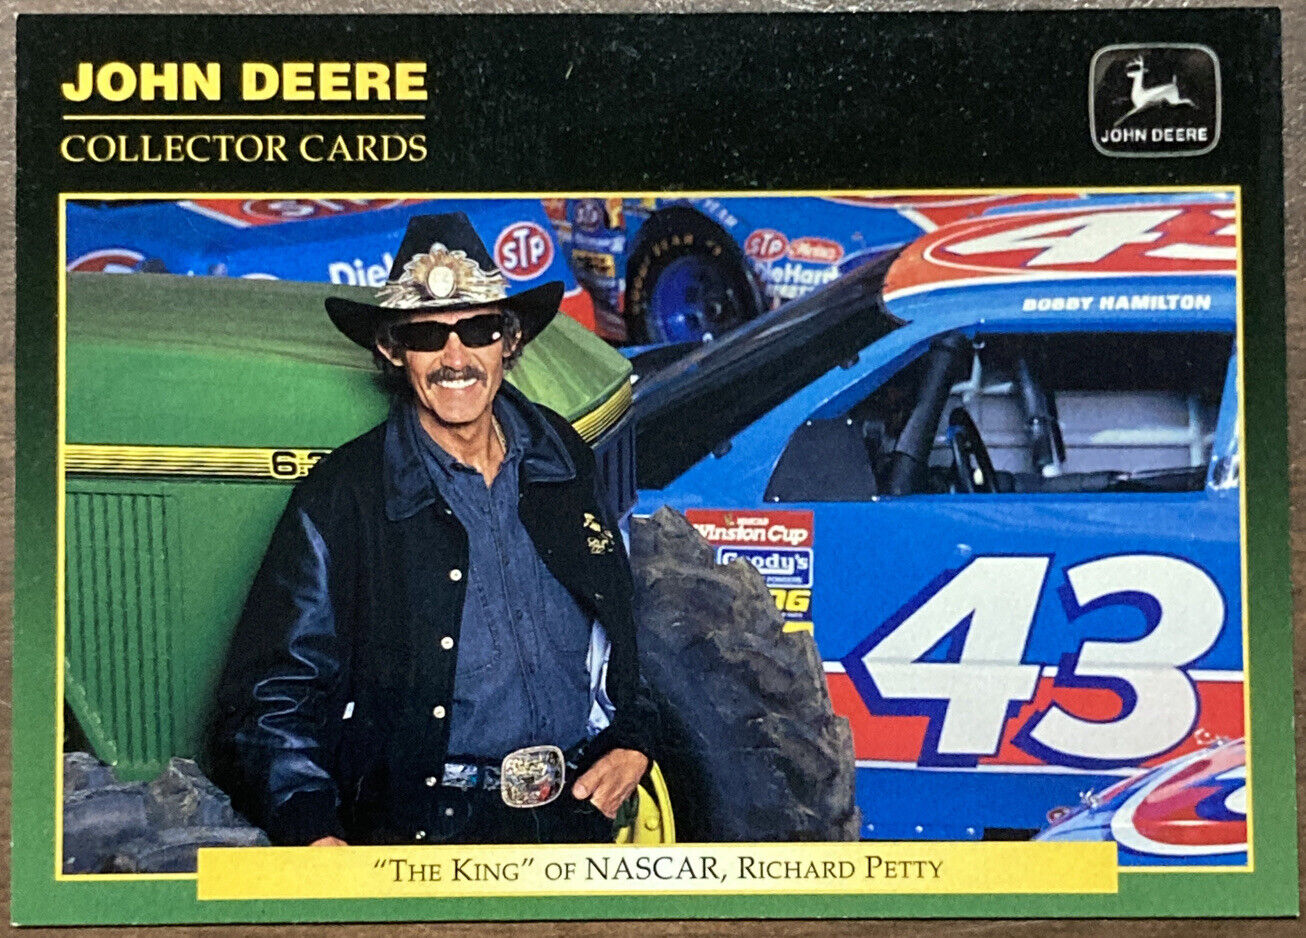 1995 Upper Deck John Deere Collector Card Richard Petty The King #62 